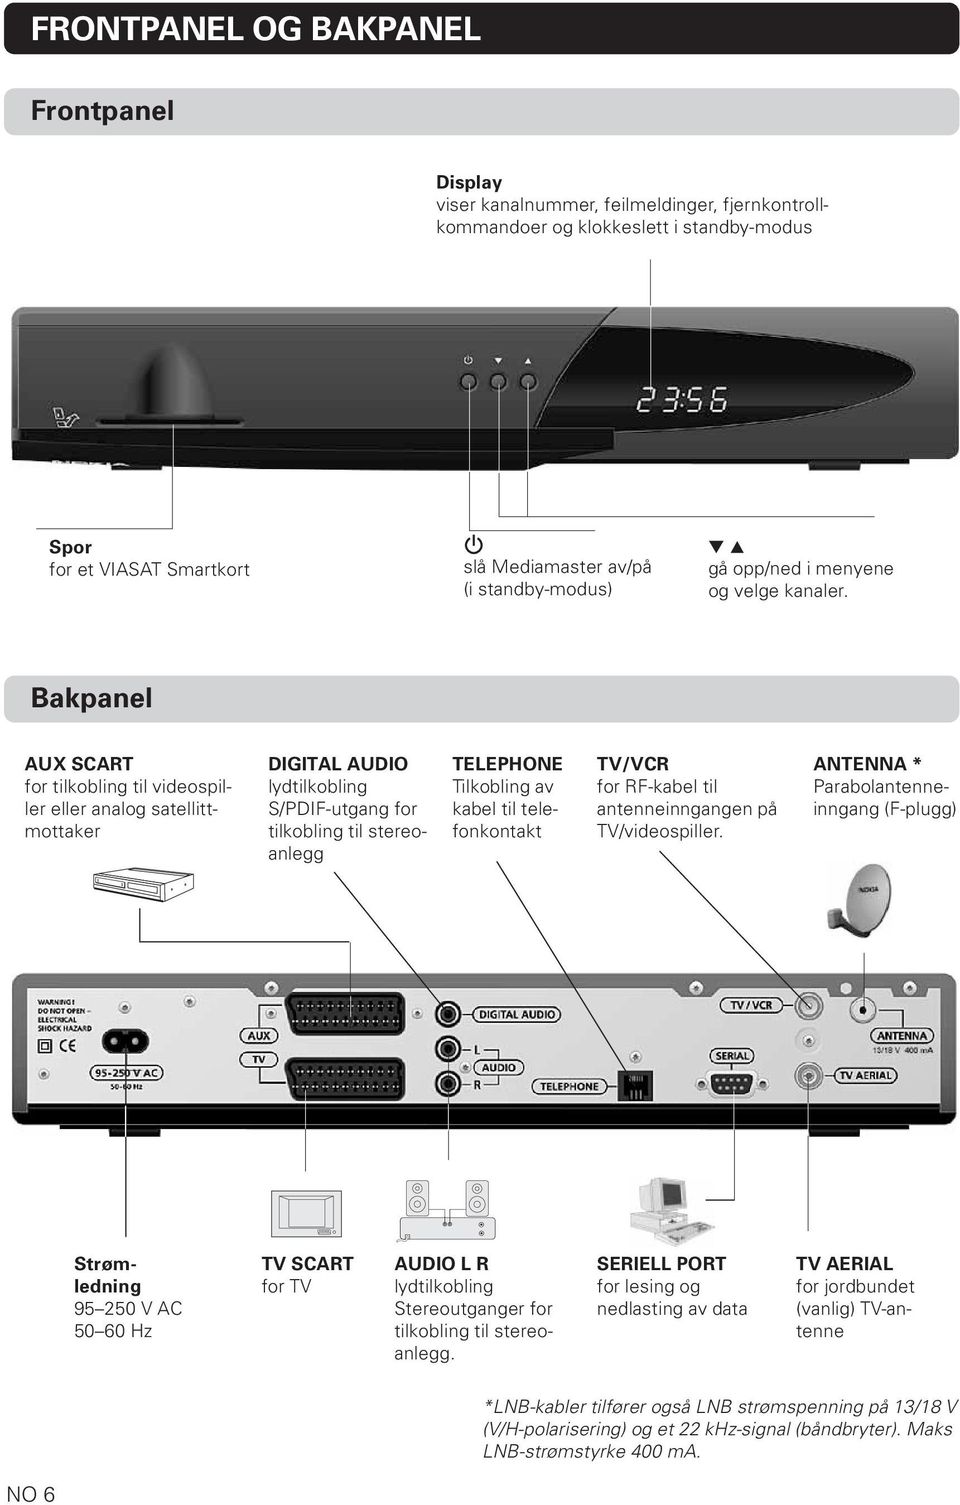 Bakpanel AUX SCART for tilkobling til videospiller eller analog satellittmottaker DIGITAL AUDIO lydtilkobling S/PDIF-utgang for tilkobling til stereoanlegg TELEPHONE Tilkobling av kabel til